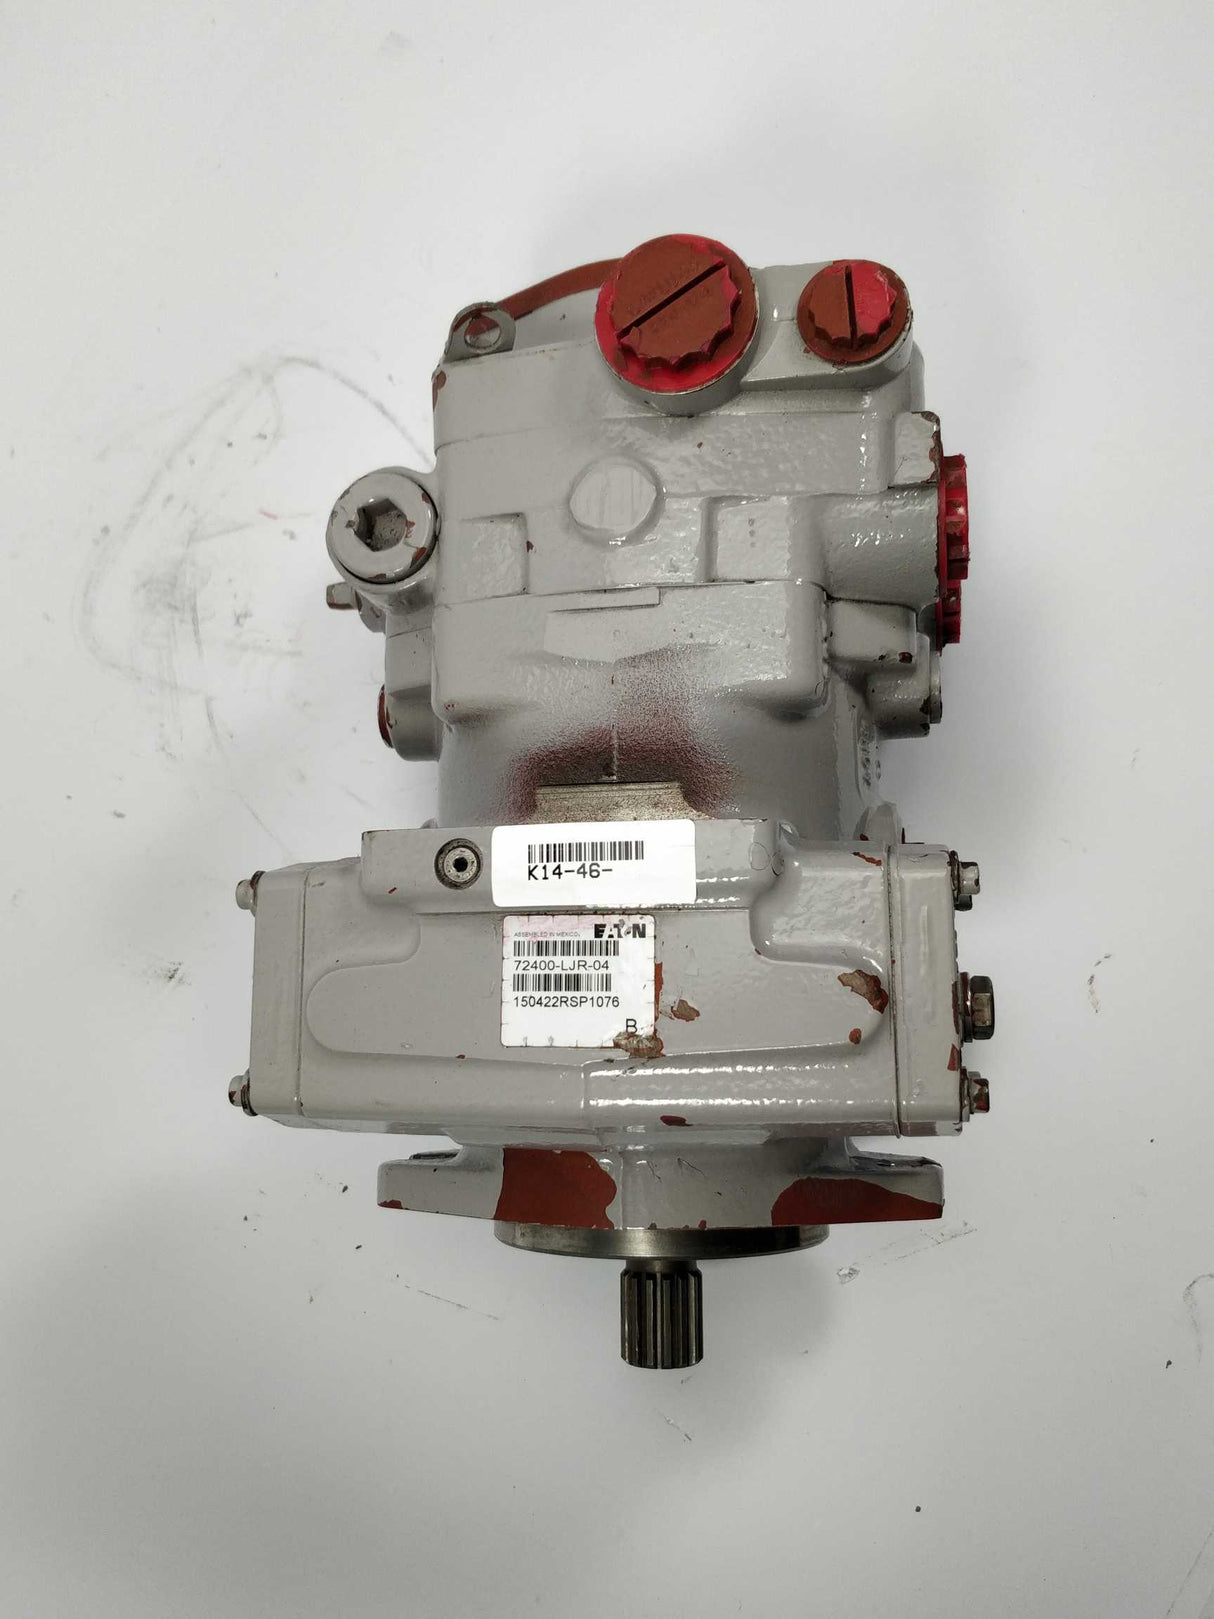 Eaton 72400-LJR-04 Closed Circuit Pump Servo Control